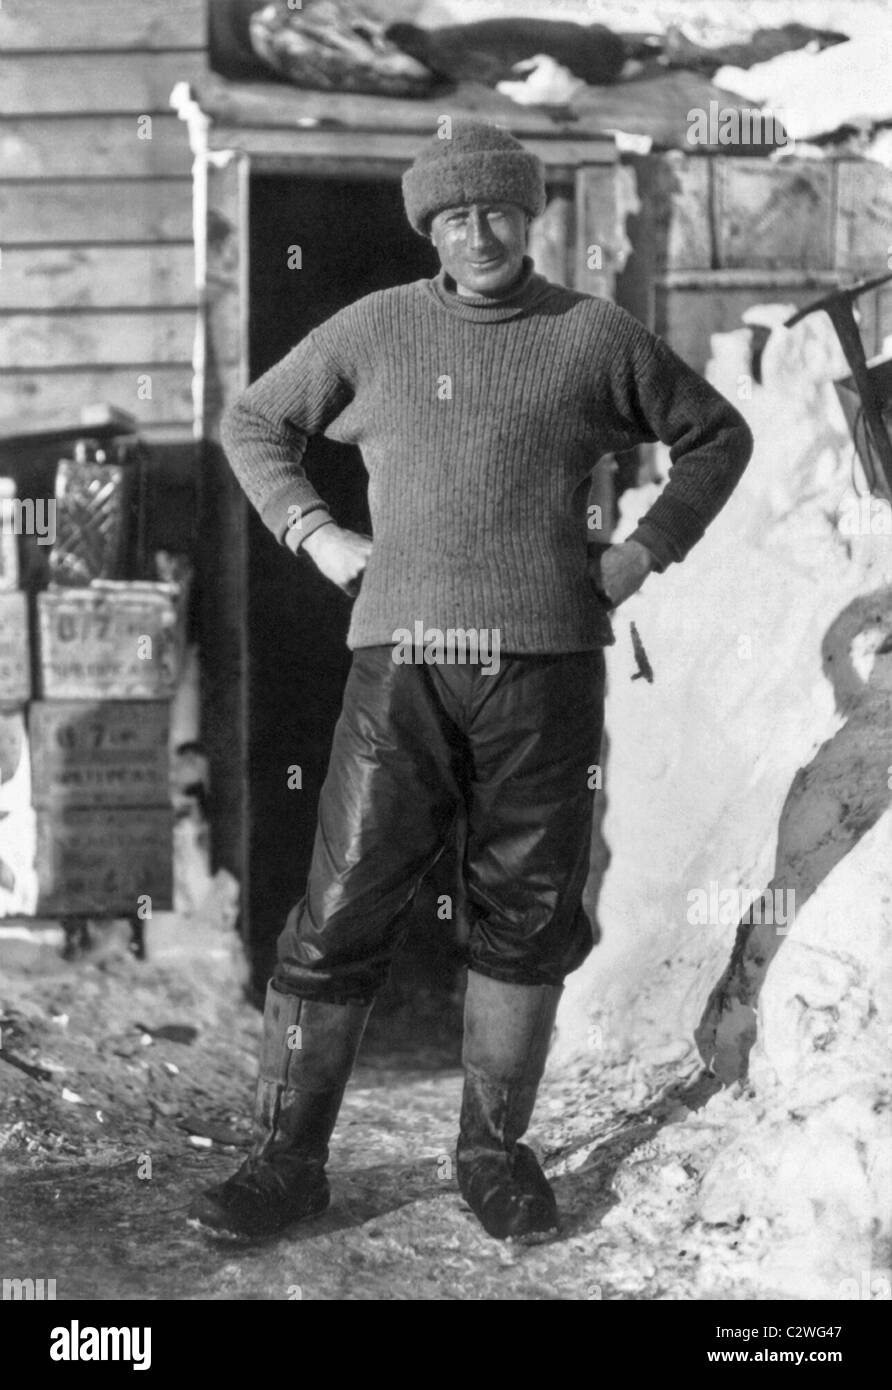 Il dottor Edward Wilson (1872 - 1912) - un membro di Robert Scott Terra Nova Expedition che perirono dopo il raggiungimento del Polo Sud. Foto Stock